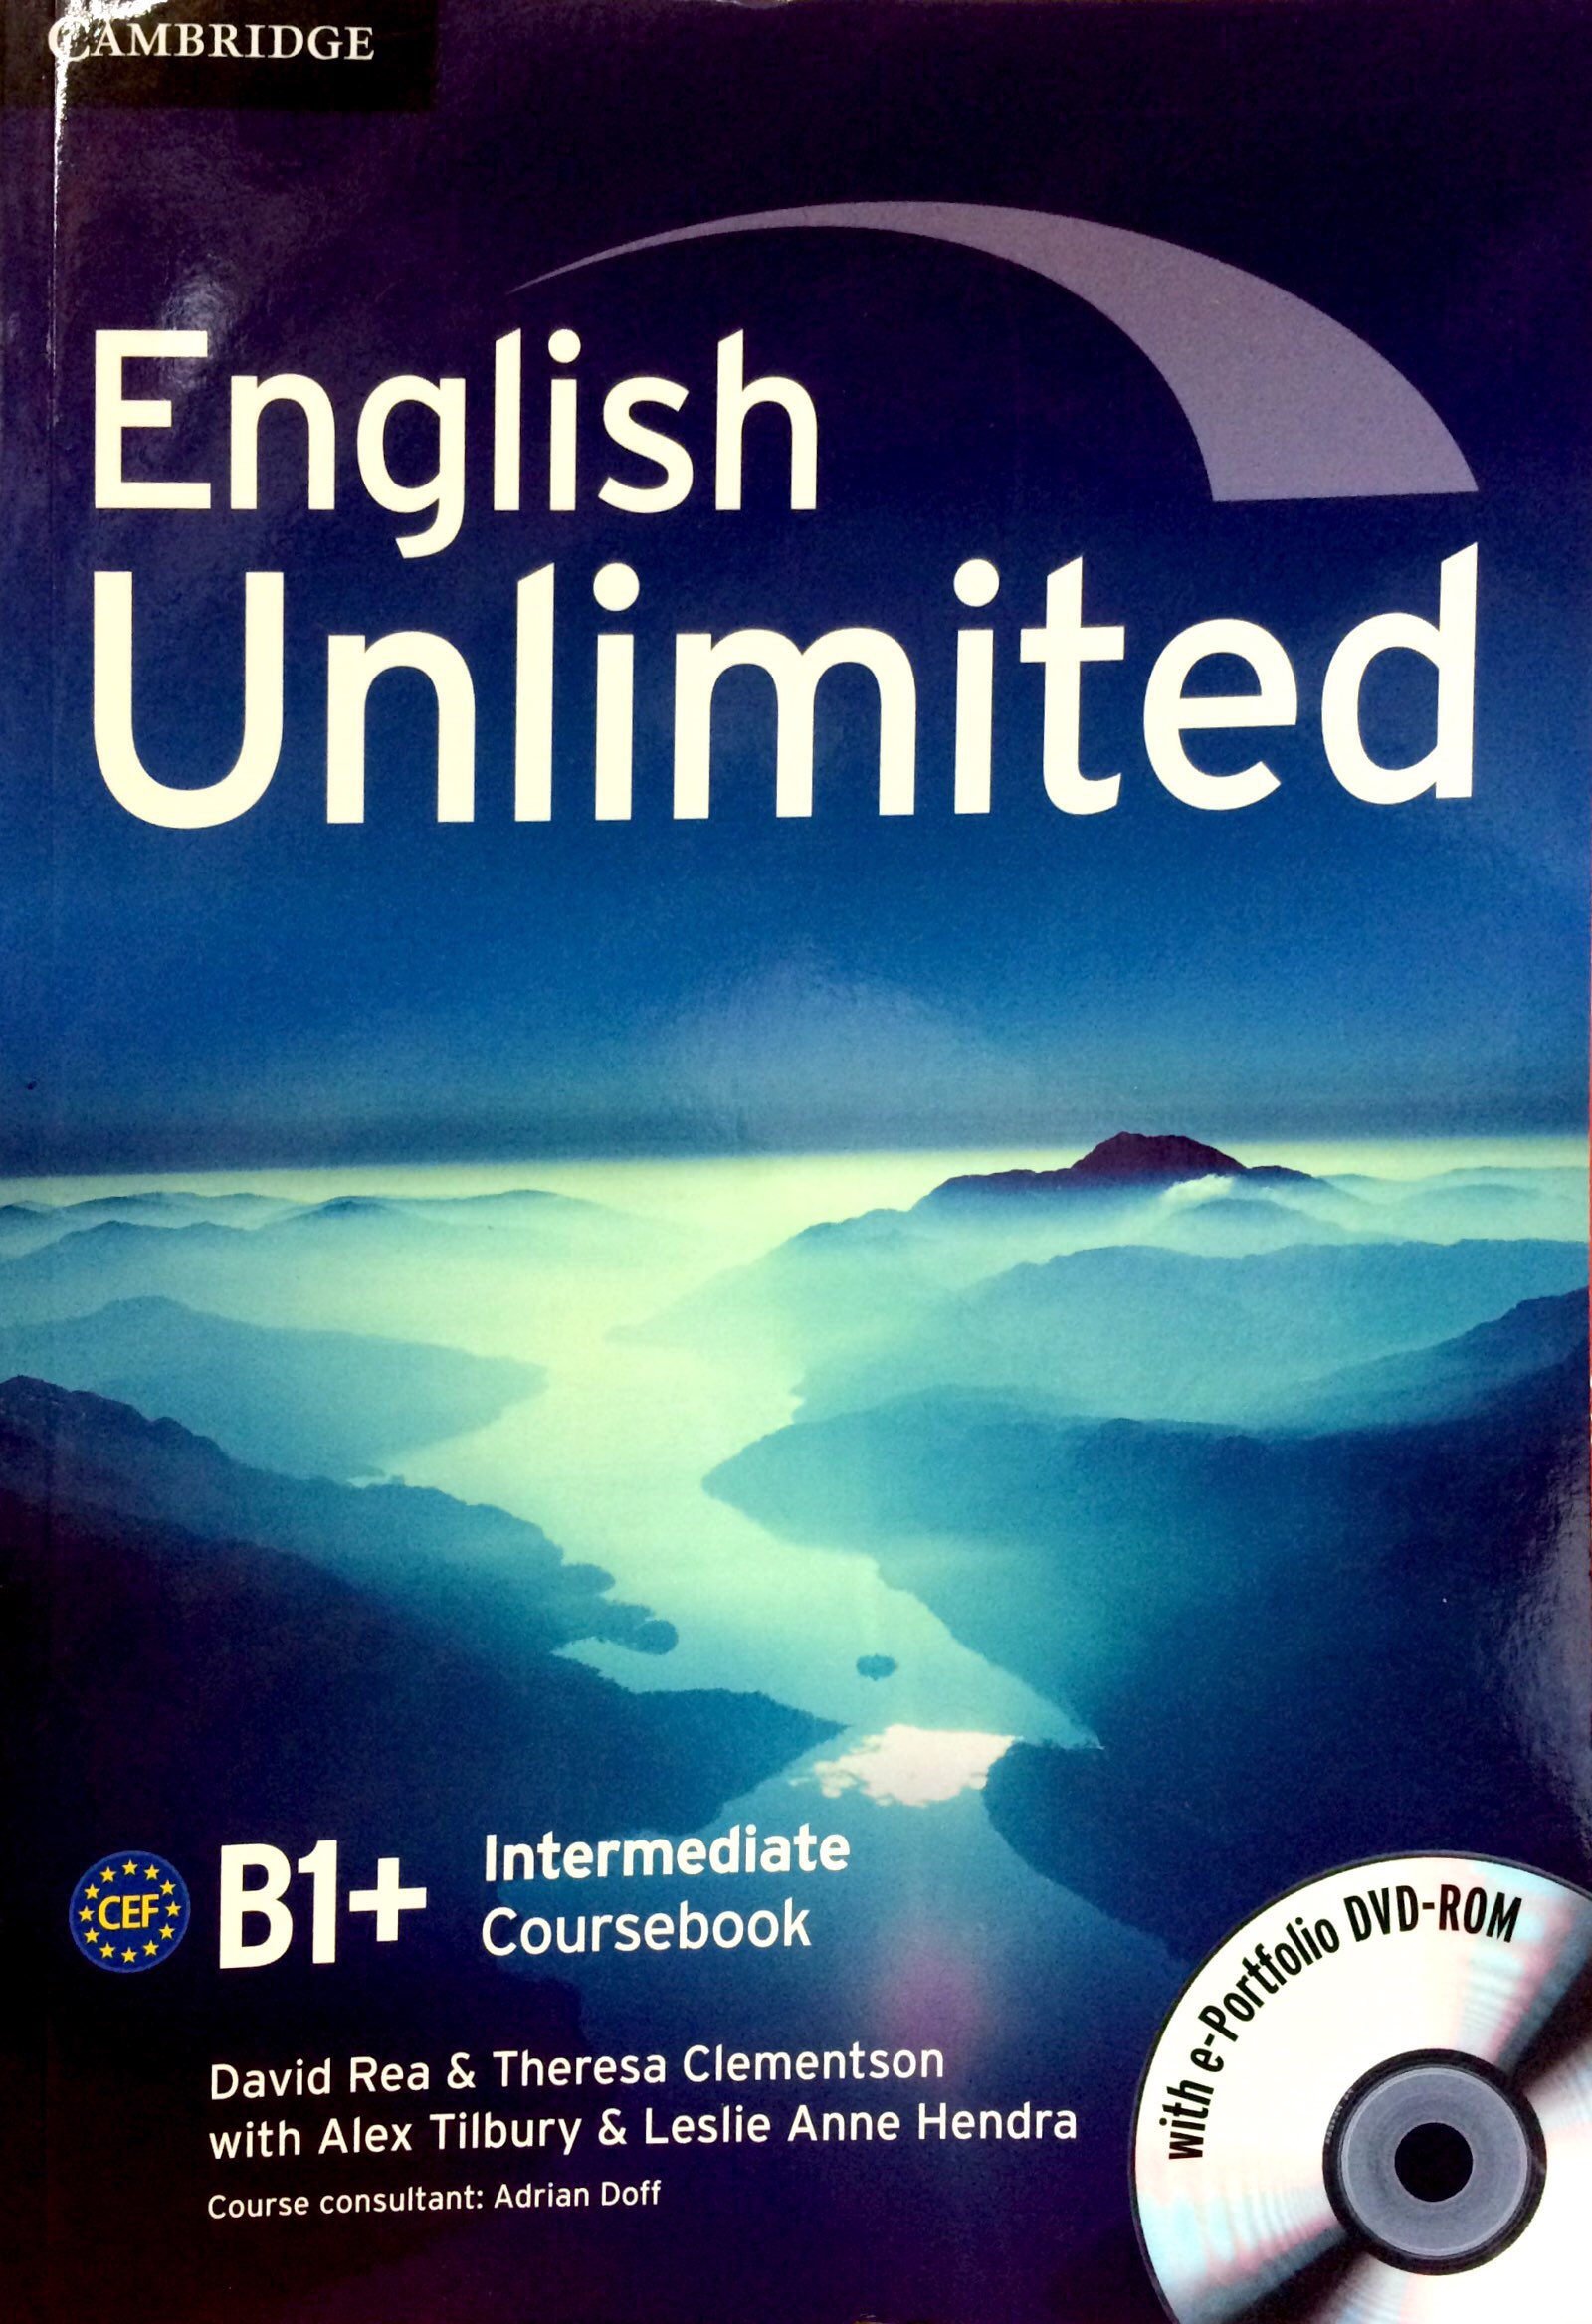 English Unlimited Intermediate Coursebook with E-Portfolio